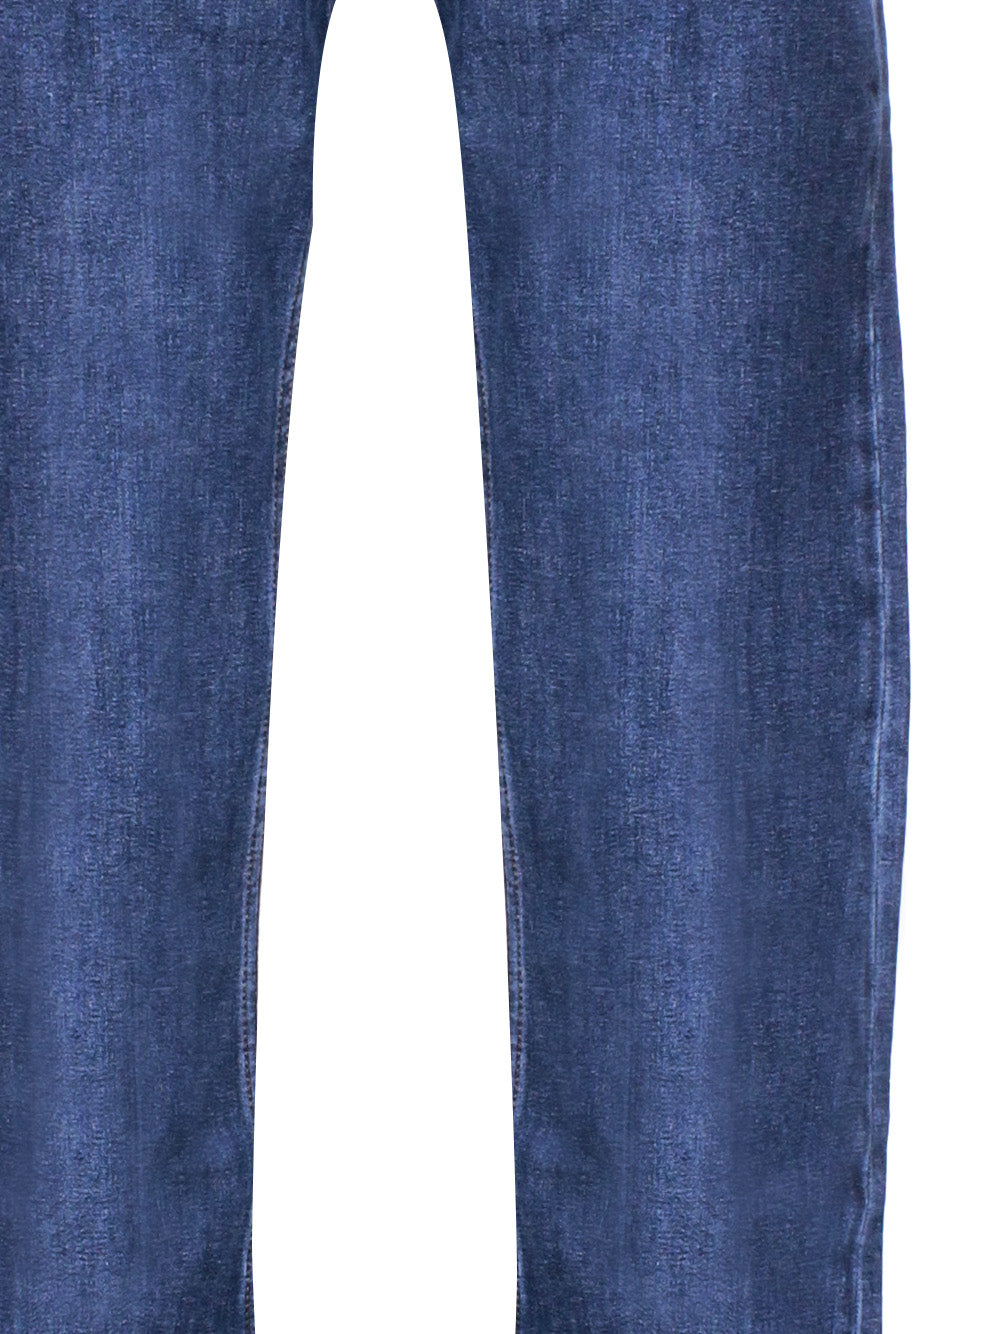 BOSS 50506700 Man Blue Jeans - Zuklat